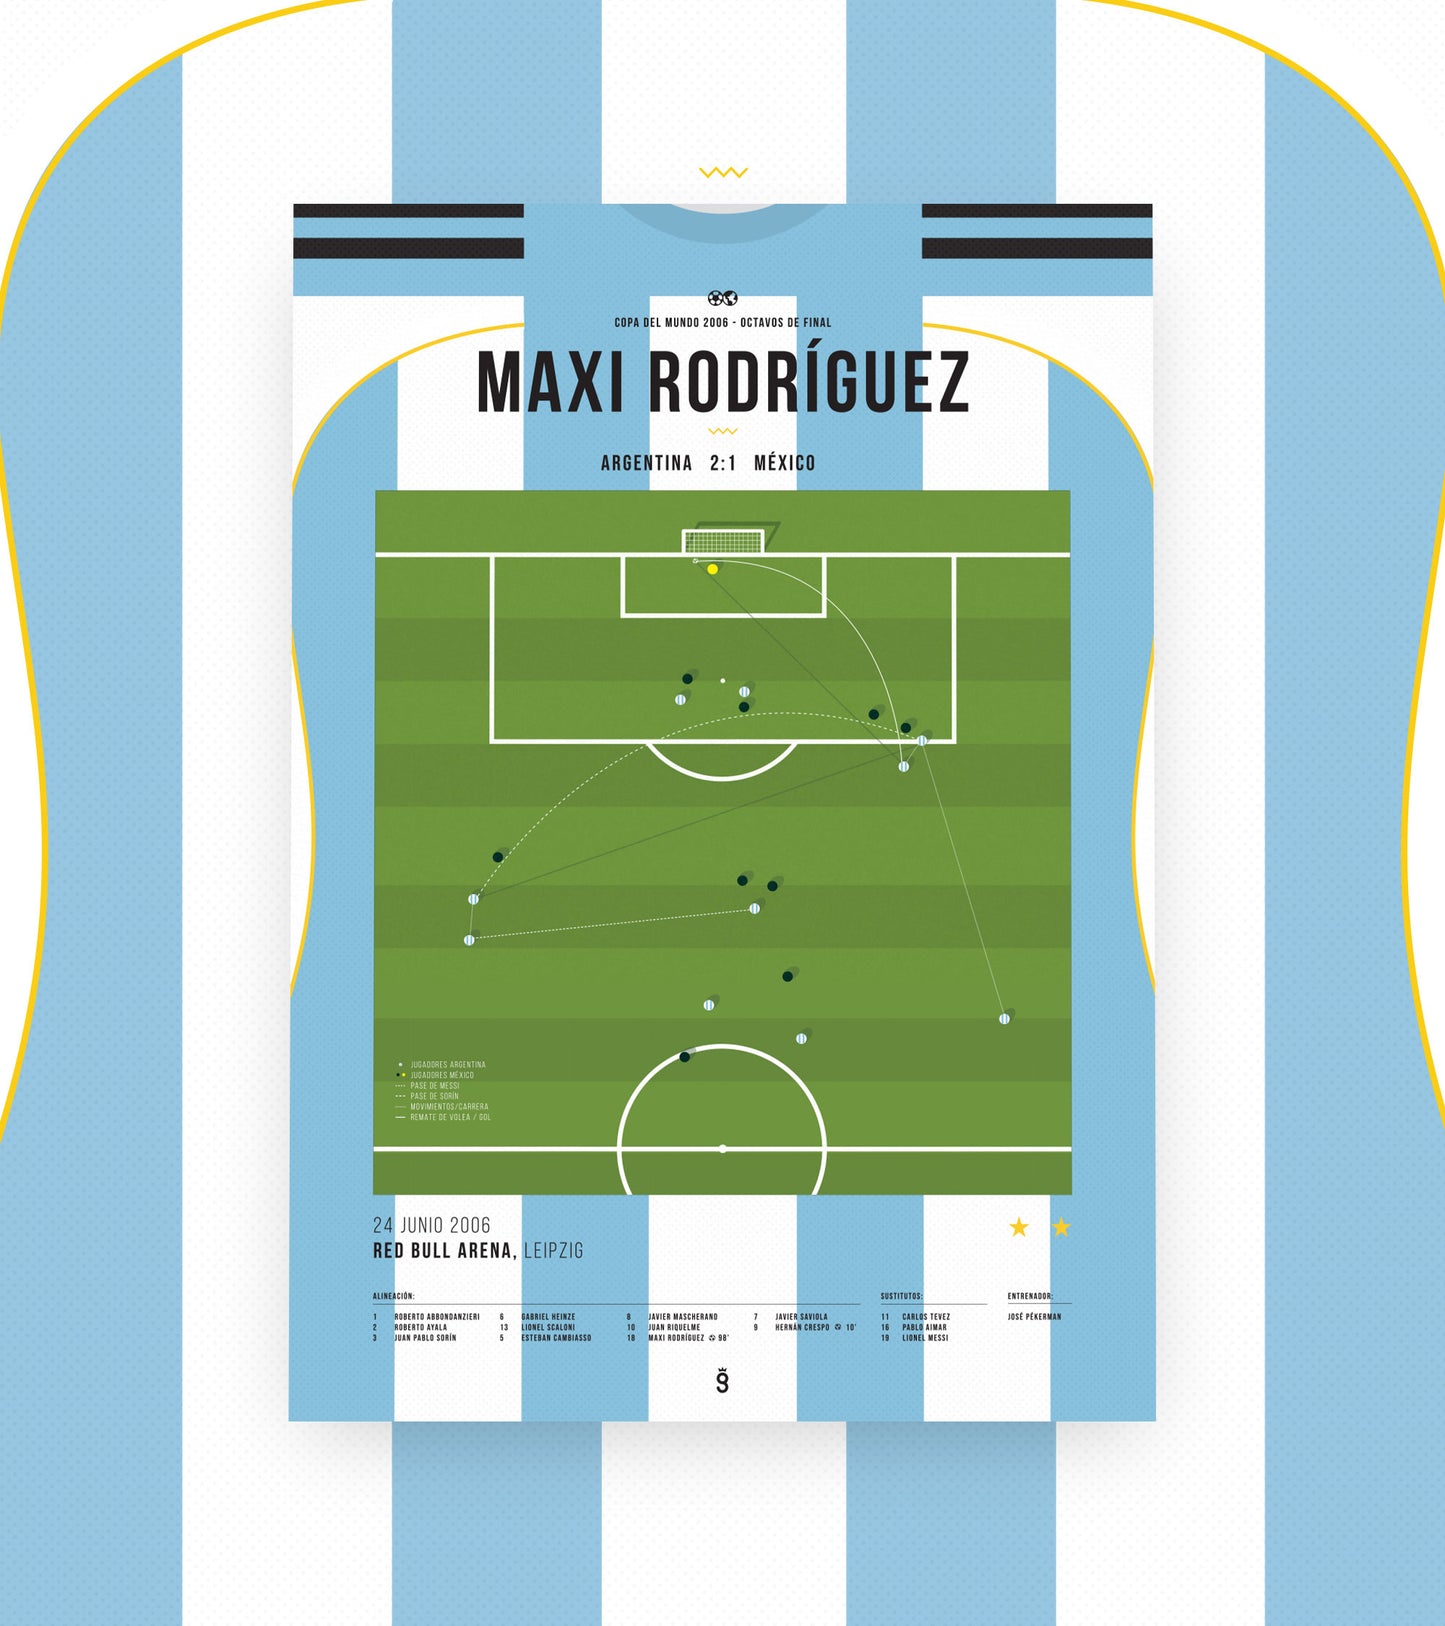 El golazo de Maxi Rodríguez